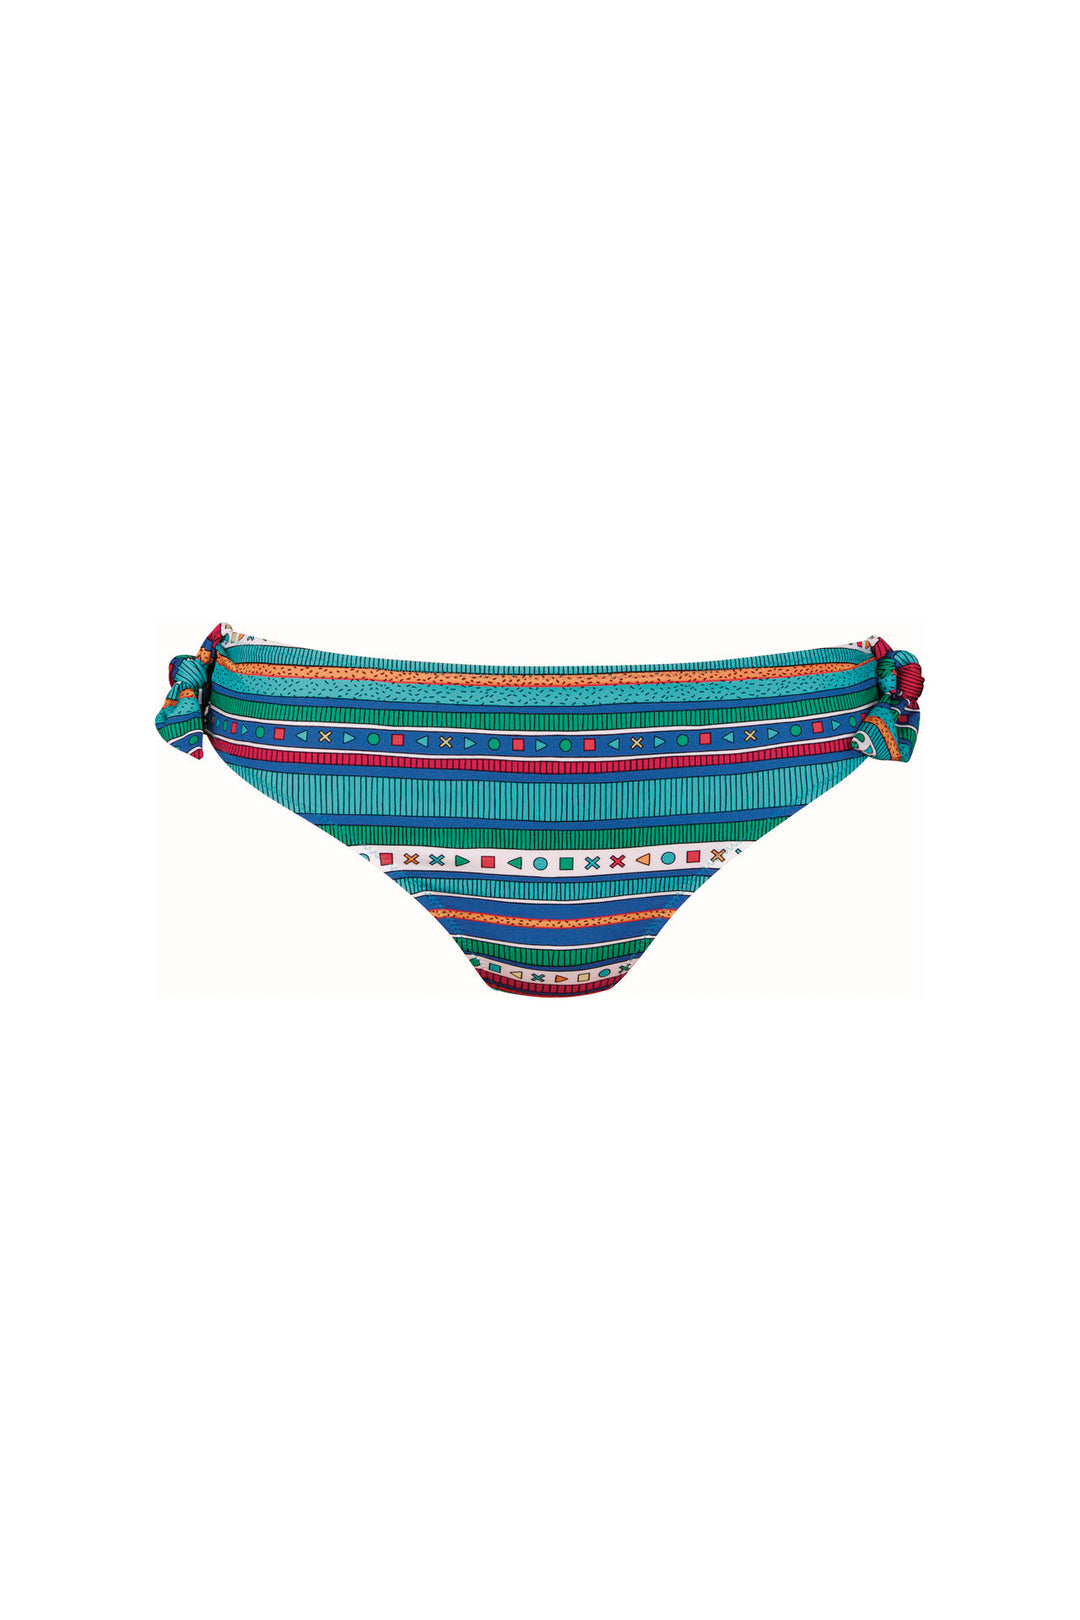 Malaga Lynn Stripes Swim Bottom - Size 14